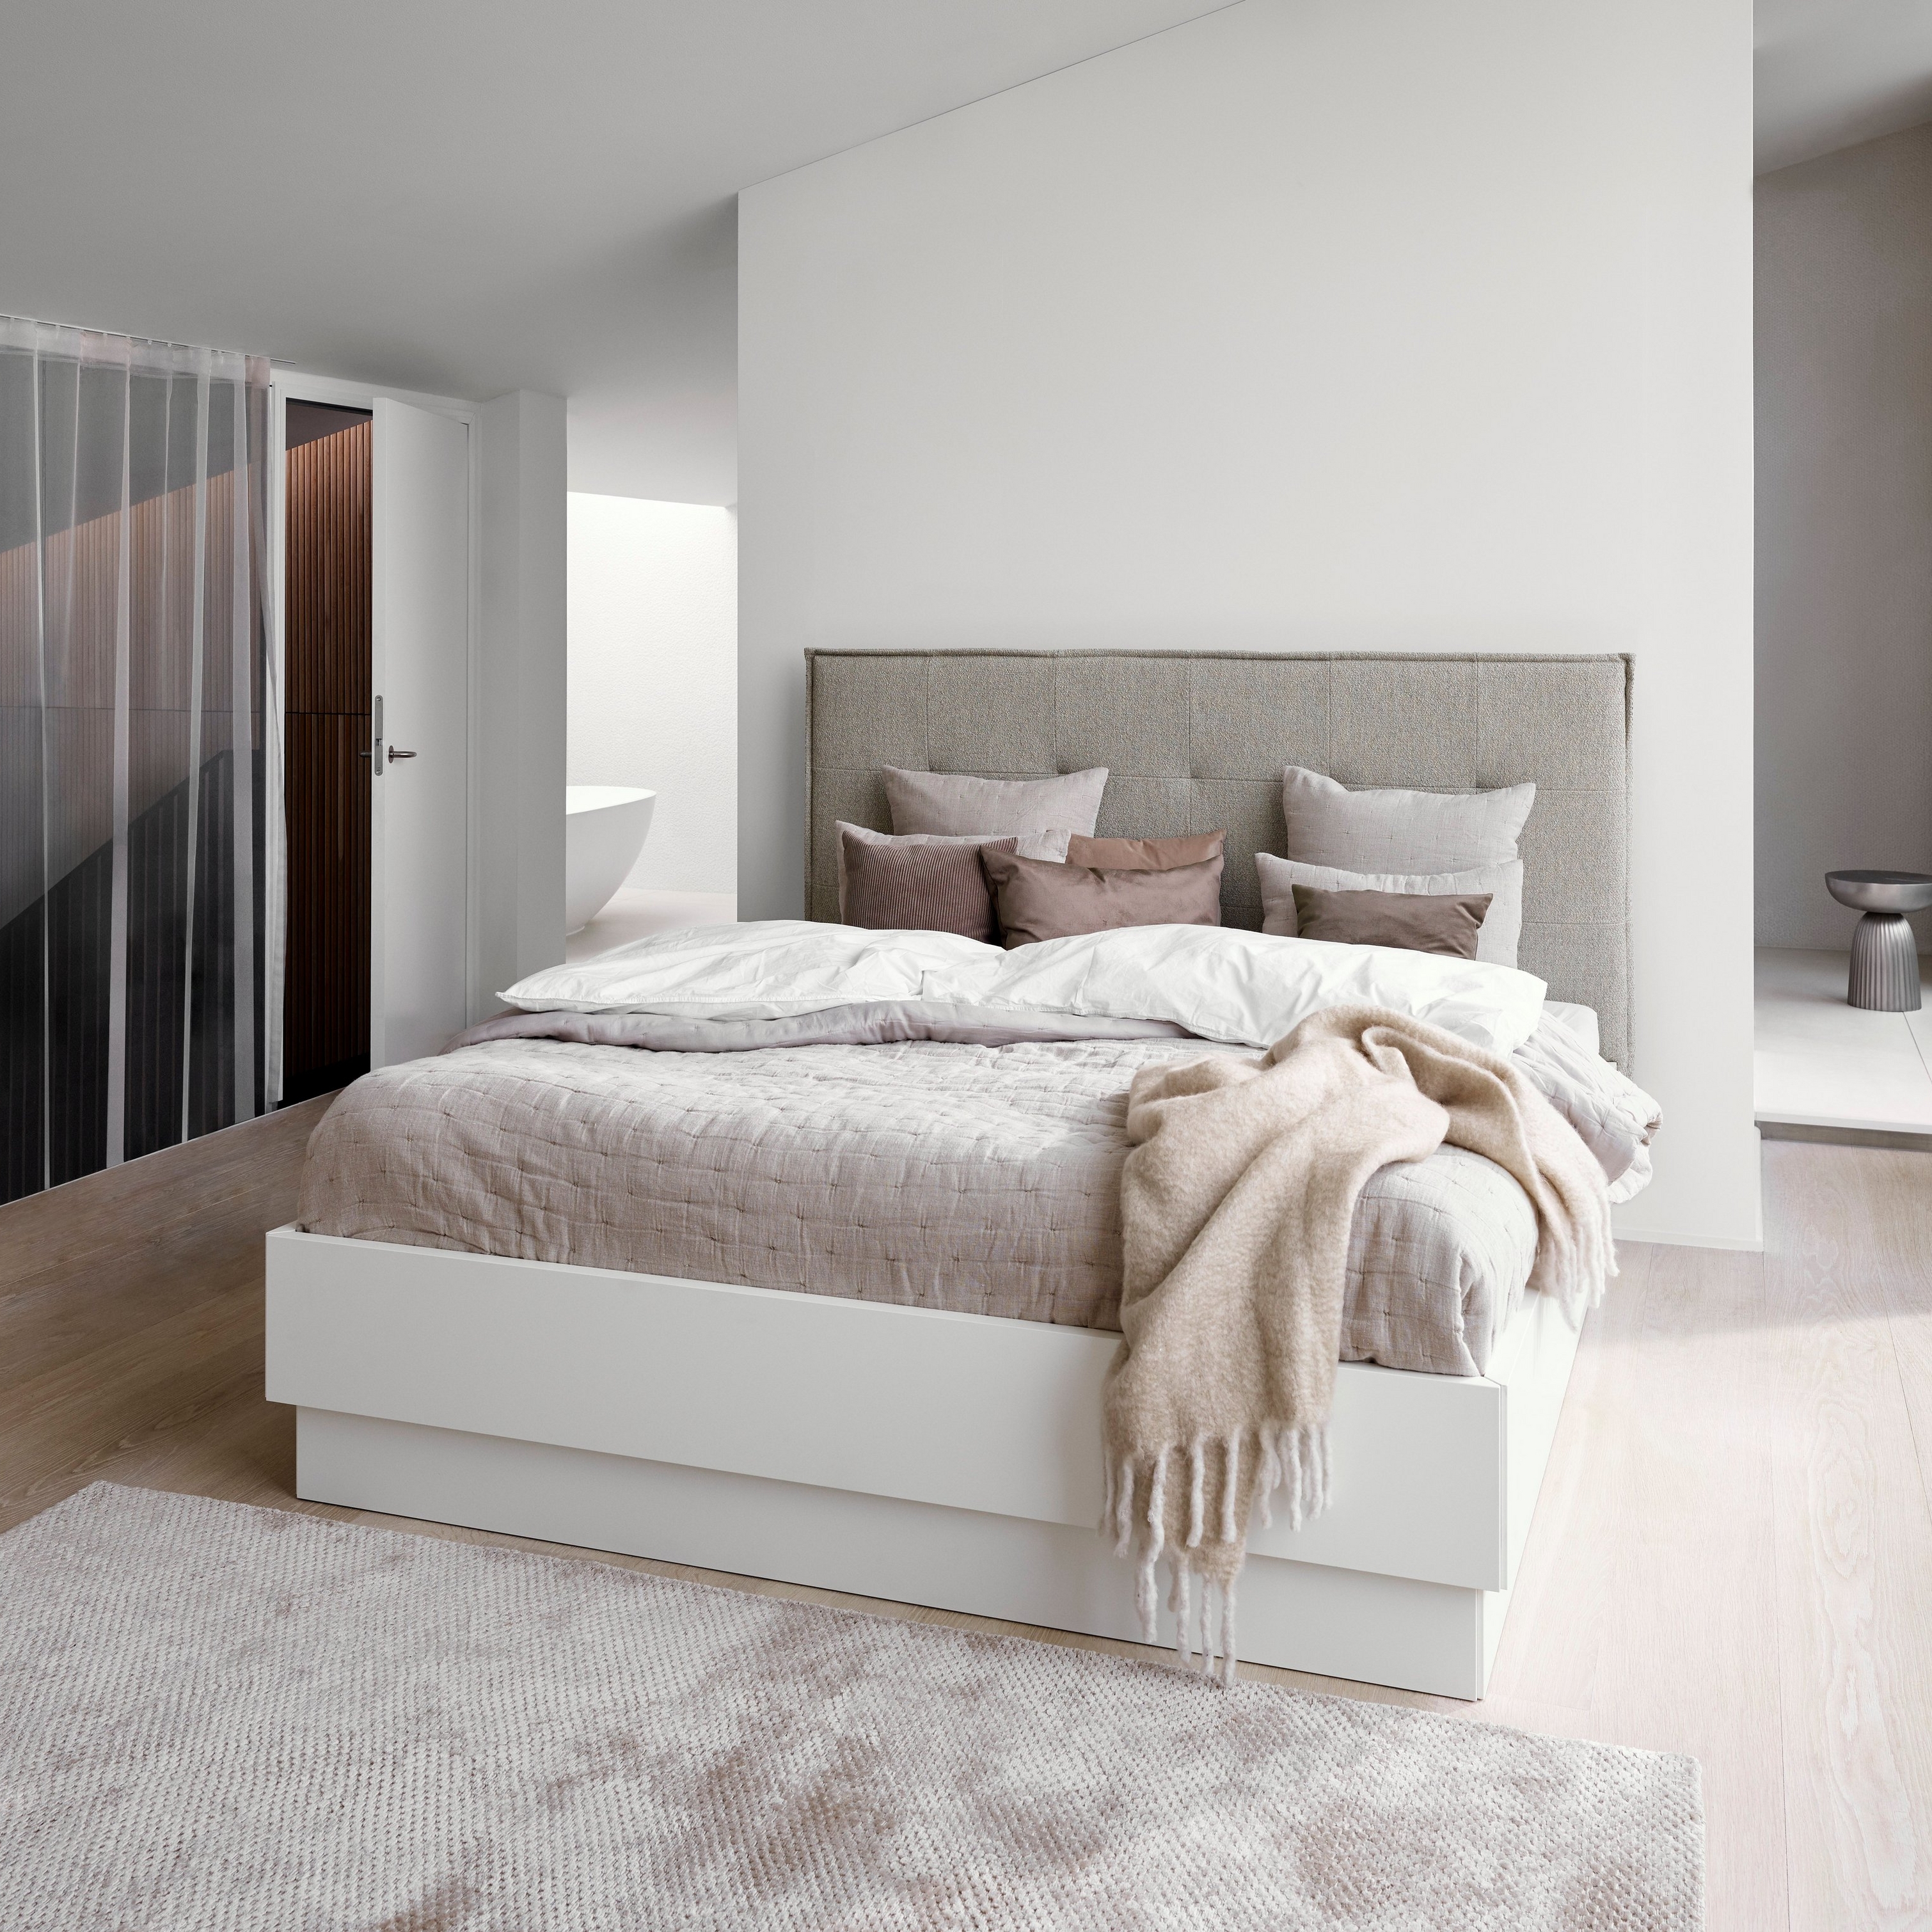 Minimalistiskt sovrum med en grå säng, vita sängkläder och en beige pläd med struktur.